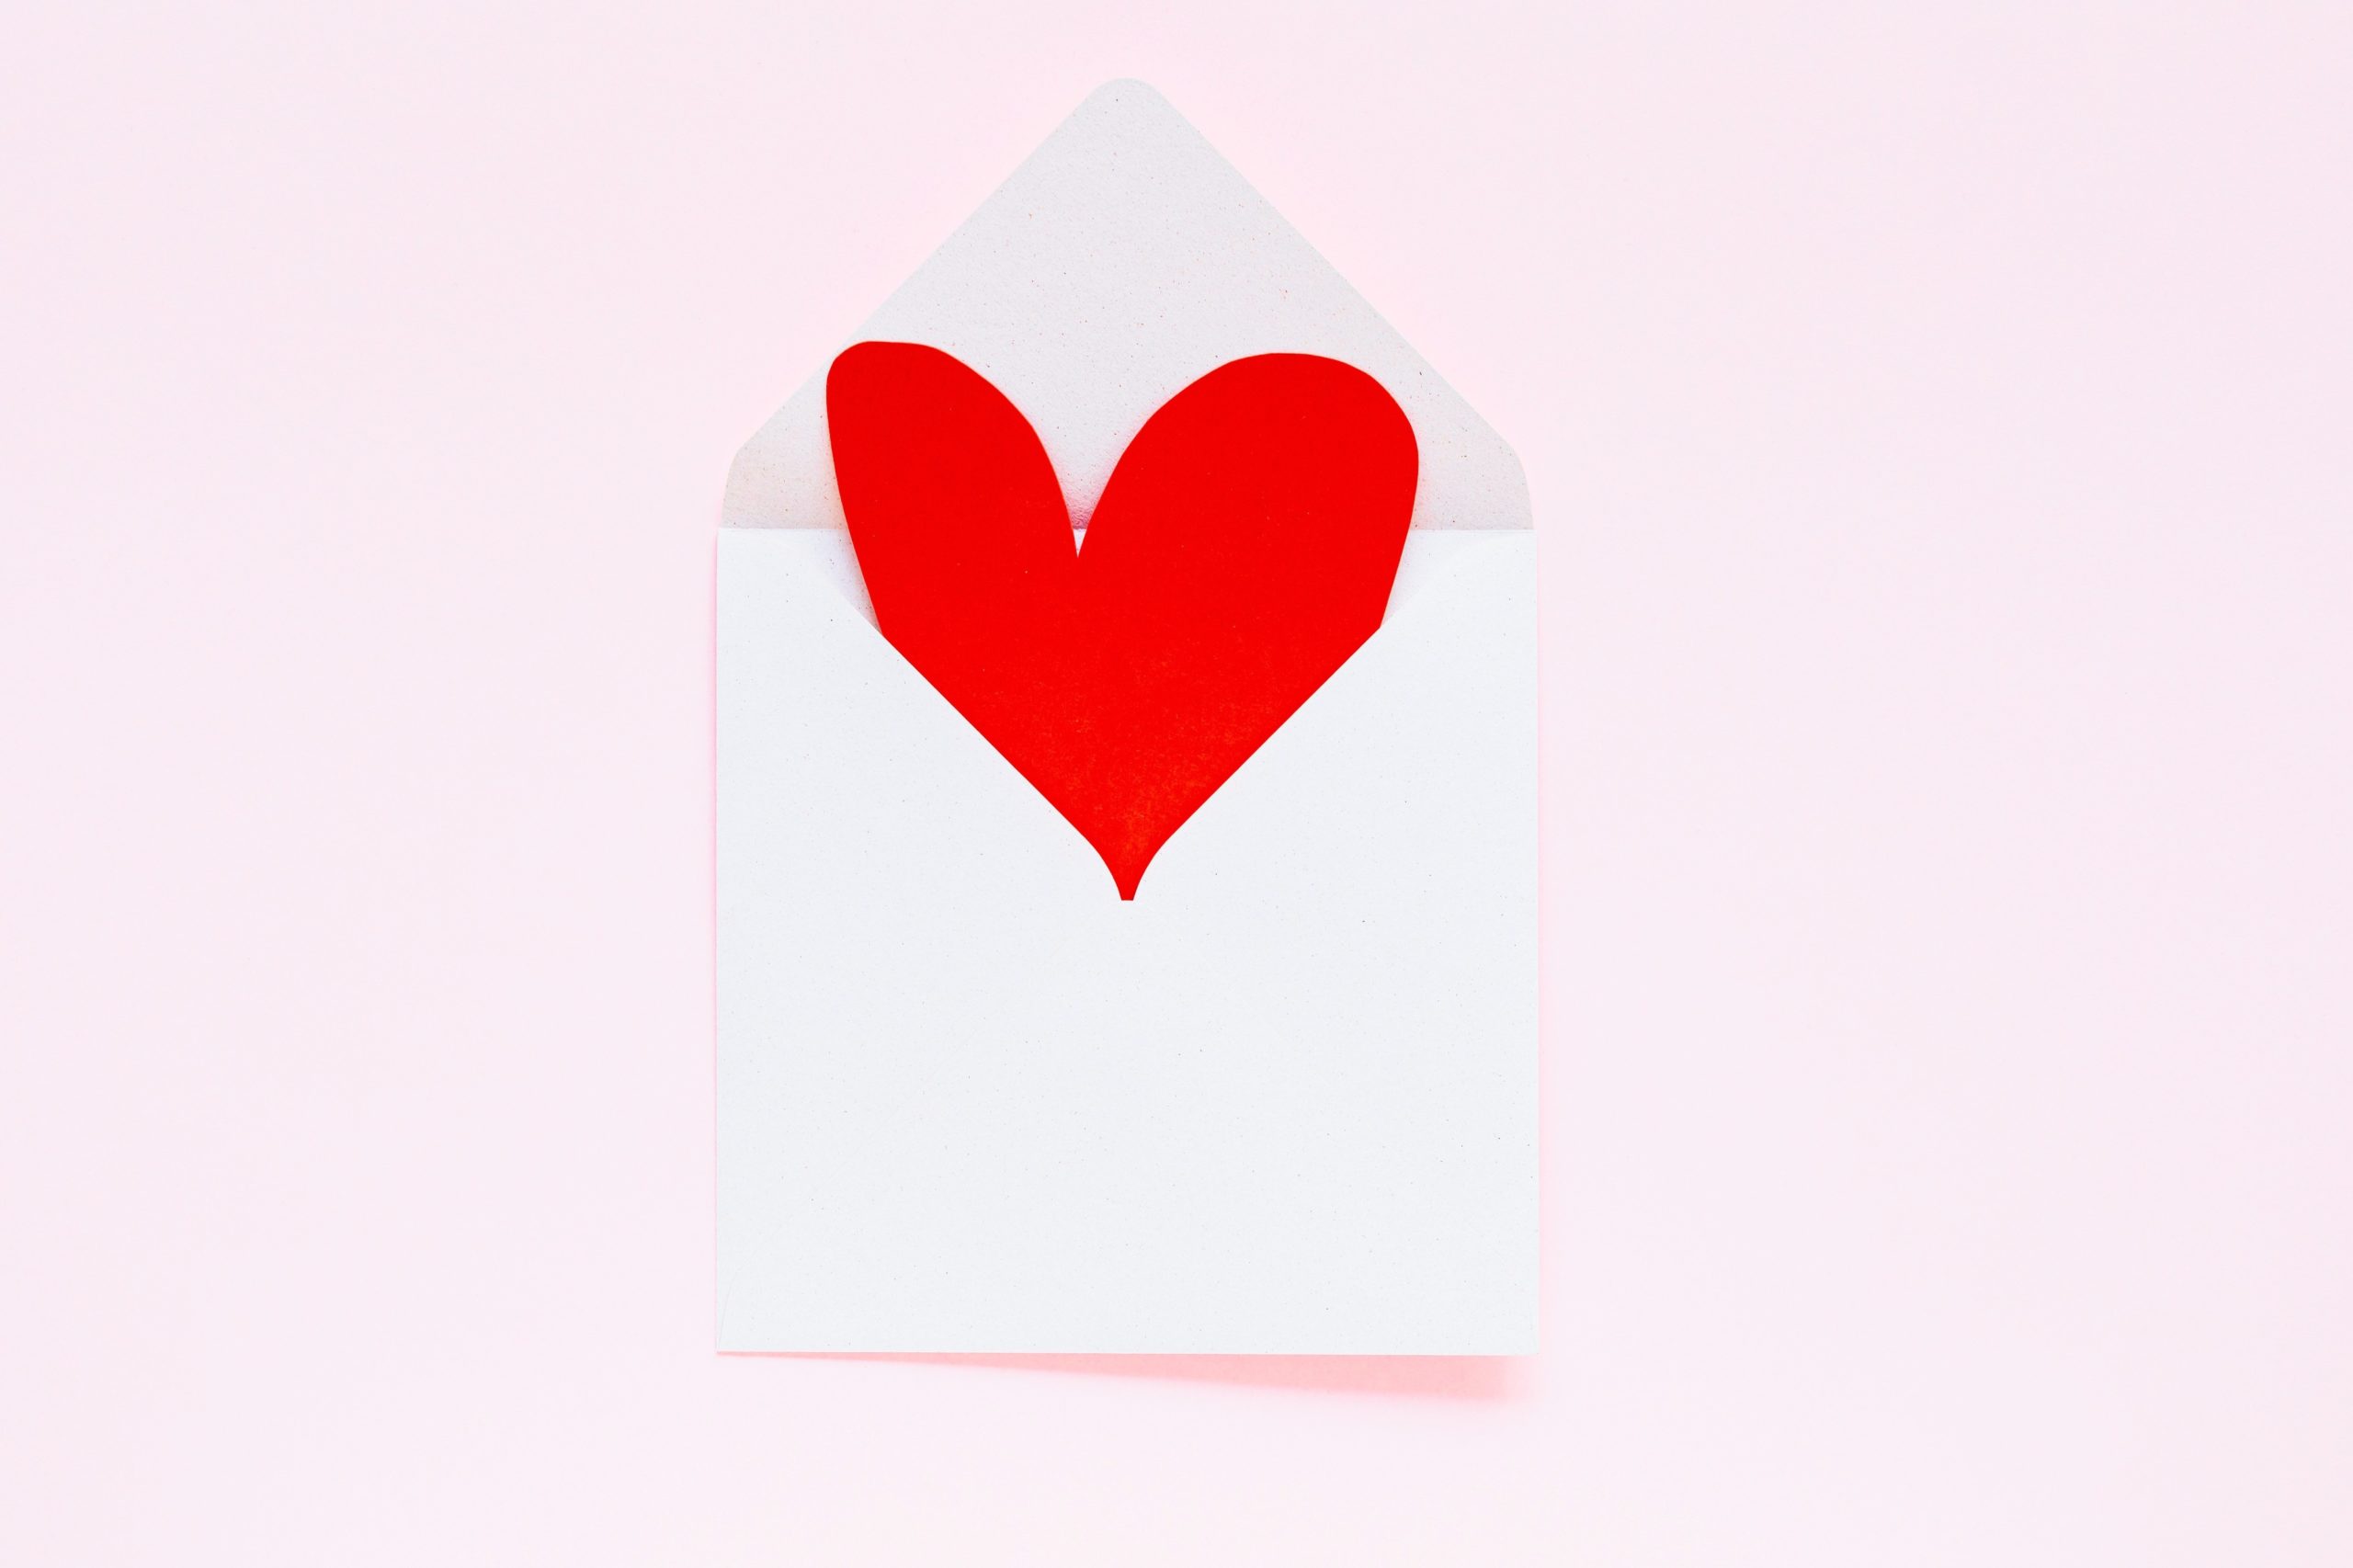 <img src="love.jpg" alt="love heart envelope"/> 